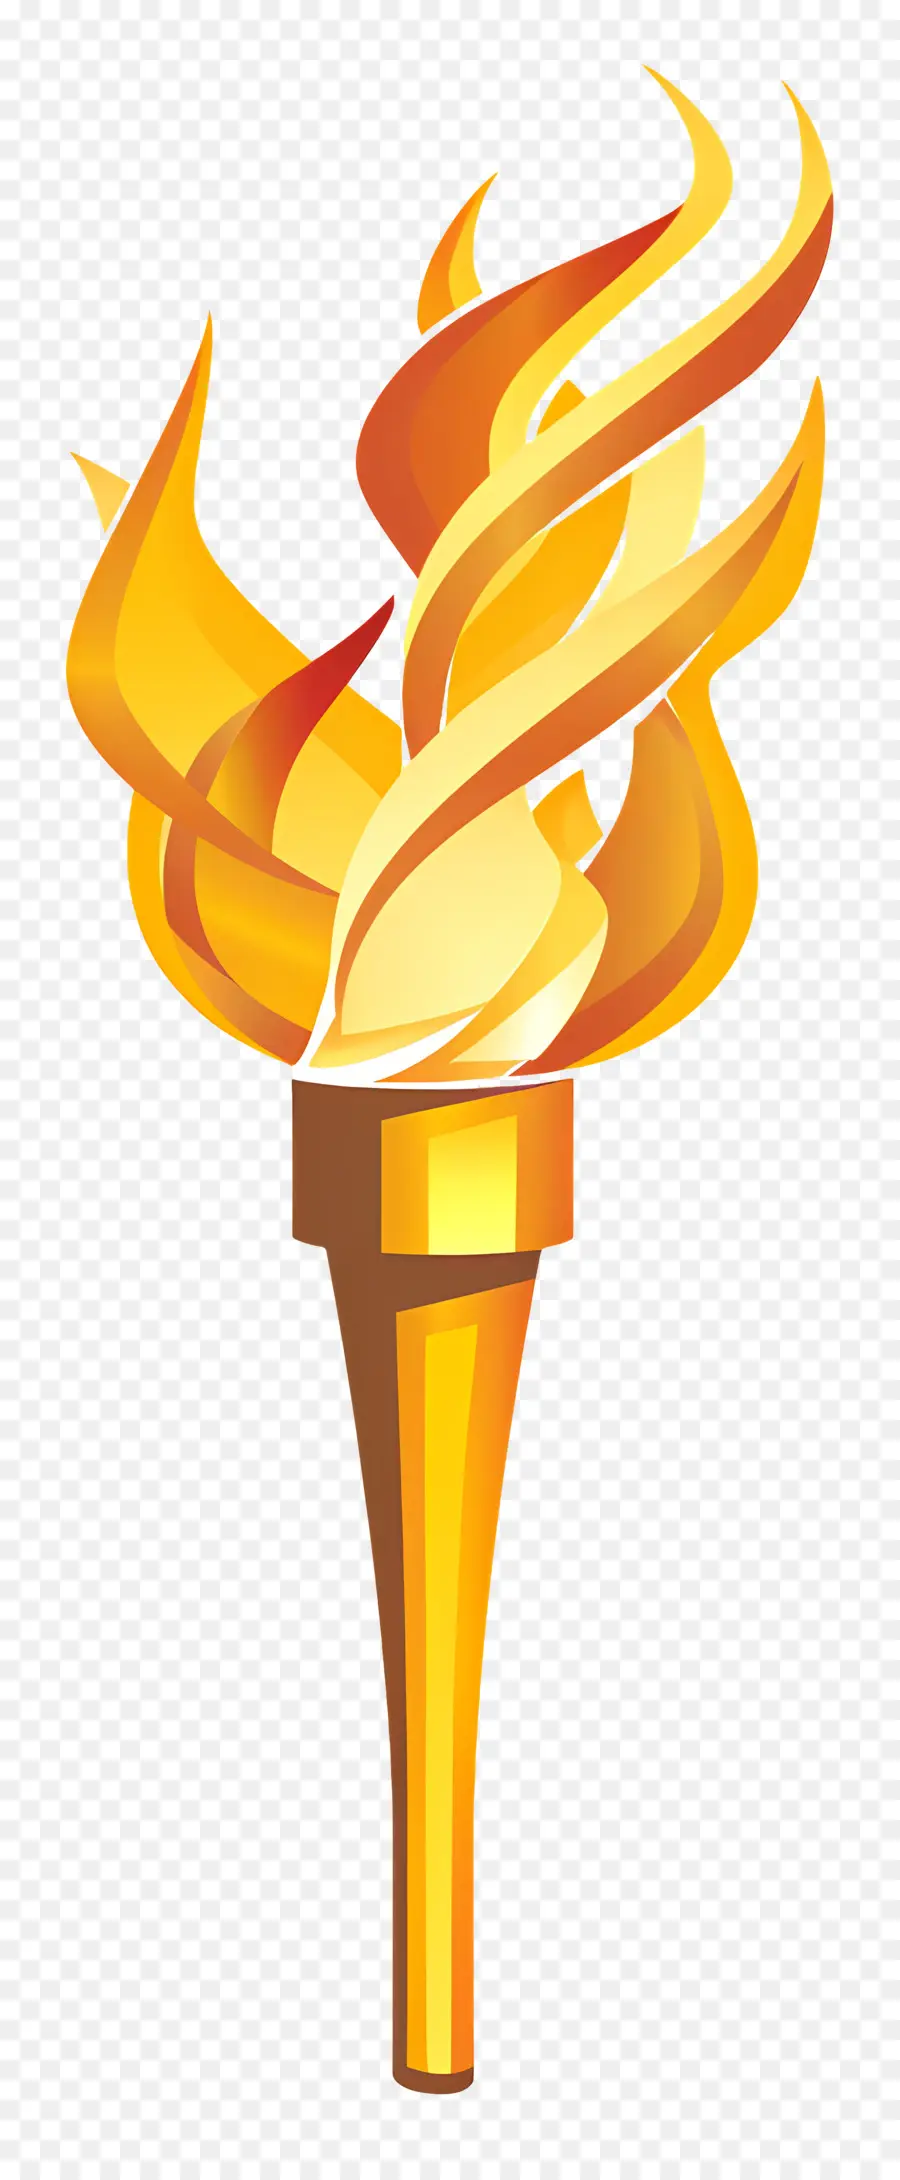 Олимпийский факел，Золотой факел PNG